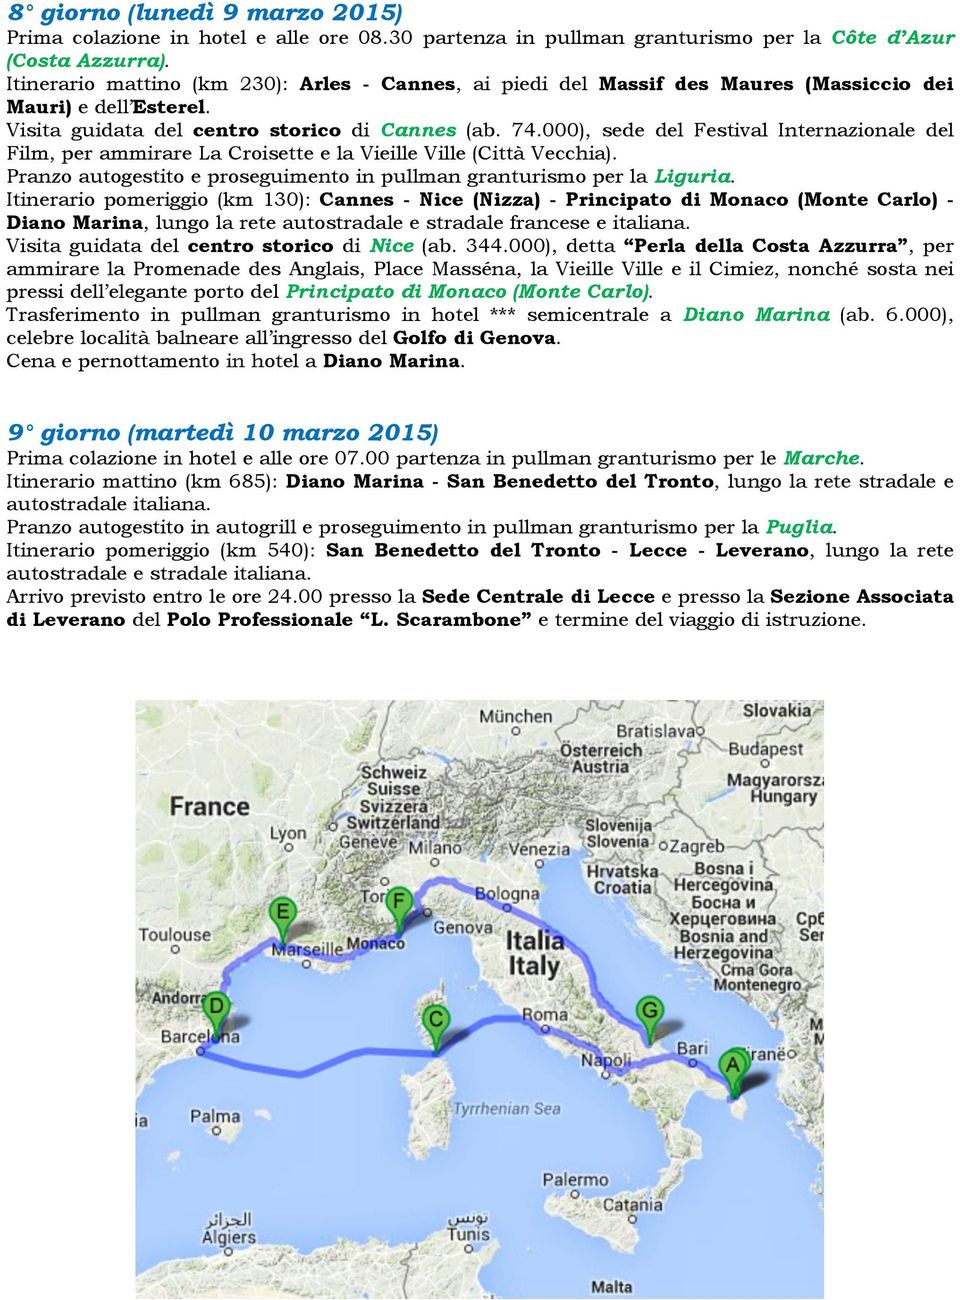 000), sede del Festival Internazionale del Film, per ammirare La Croisette e la Vieille Ville (Città Vecchia). Pranzo autogestito e proseguimento in pullman granturismo per la Liguria.